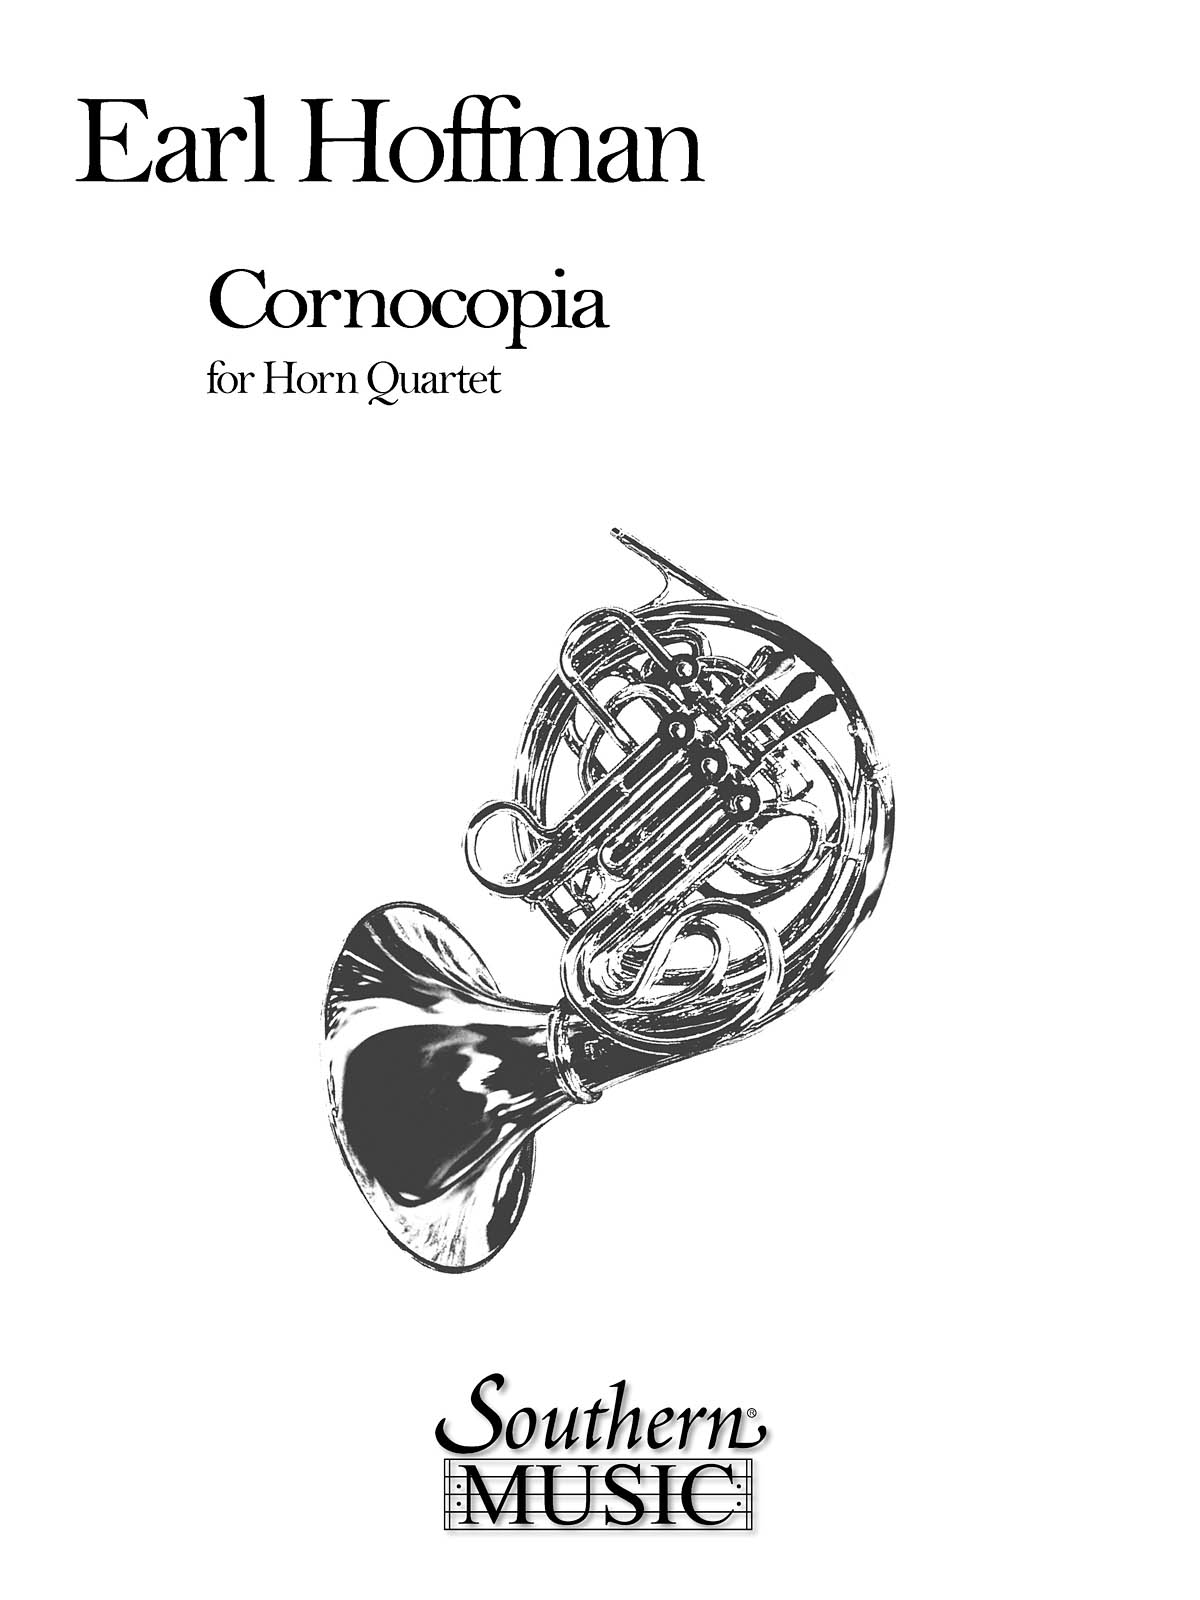 Cornocopia - čtyři lesní rohy